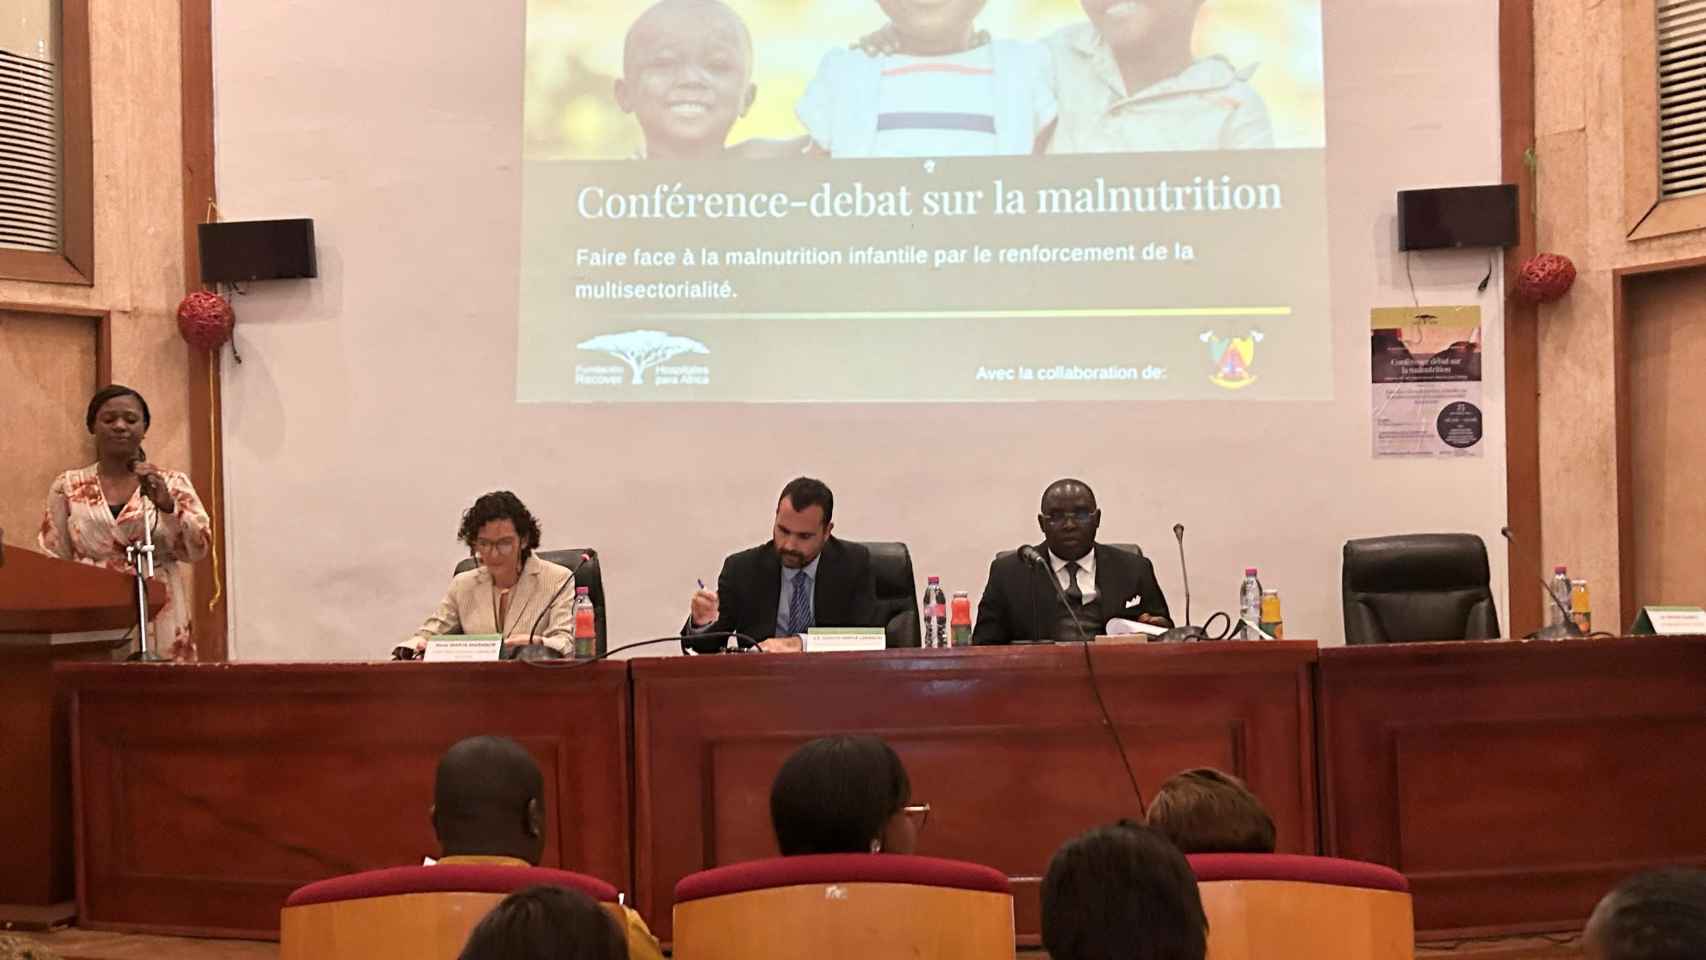 La Jornada de Desnutrición infantil, de izquierda a derecha: la Representante de Fundación Recover en África, el Embajador de España y  el representante del Comité Interministerial para la Lucha contra la Desnutrición infantil.